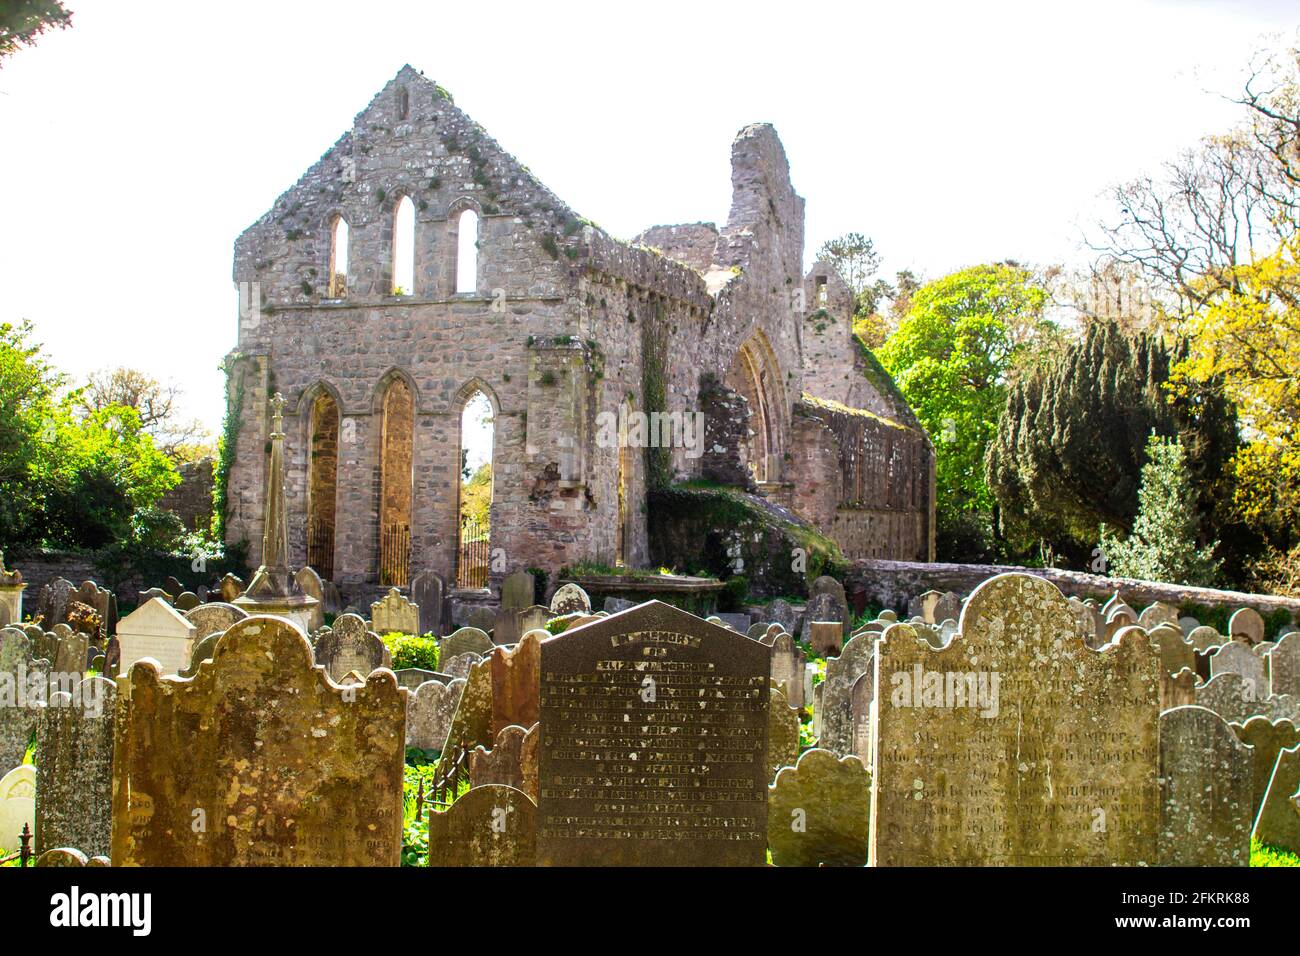 Ein Blick von hinten auf die Ruinen des historischen Klosters Greyabbey aus dem 13. Jahrhundert. Gesehen in seiner Umgebung mit dem alten Friedhof Stockfoto